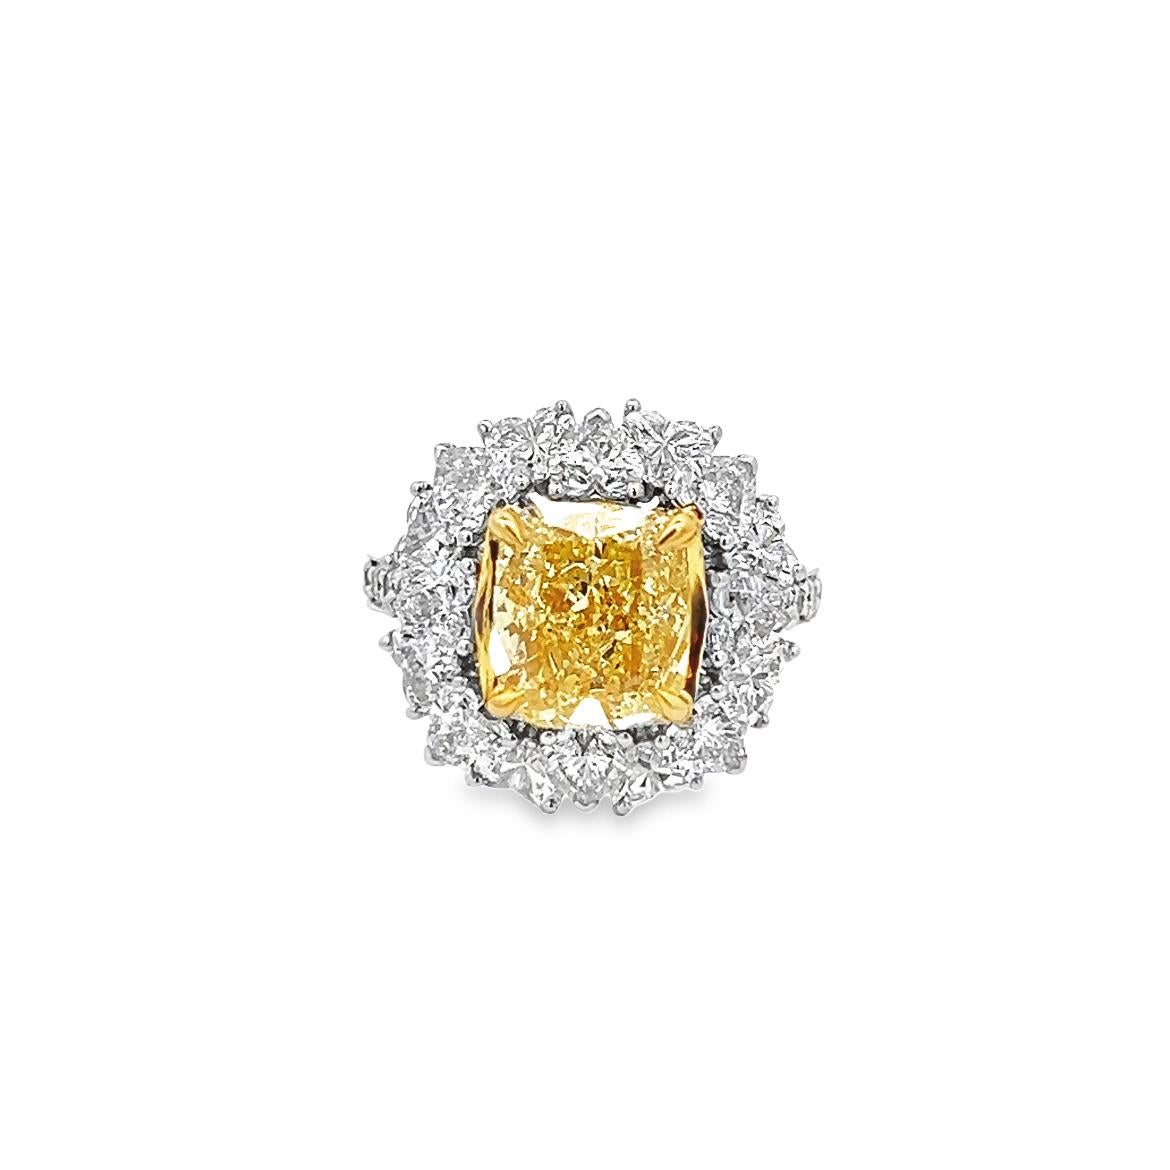 Dieser außergewöhnliche Ring mit 3,63ct kissenförmig modifiziertem Brillant, natürlichem fancy yellow even, Reinheit SI1, GIA-zertifiziert, ist ein wahres Meisterwerk. Sein handgefertigtes Design und die Fassung aus 18 Karat Gelbgold machen ihn zu